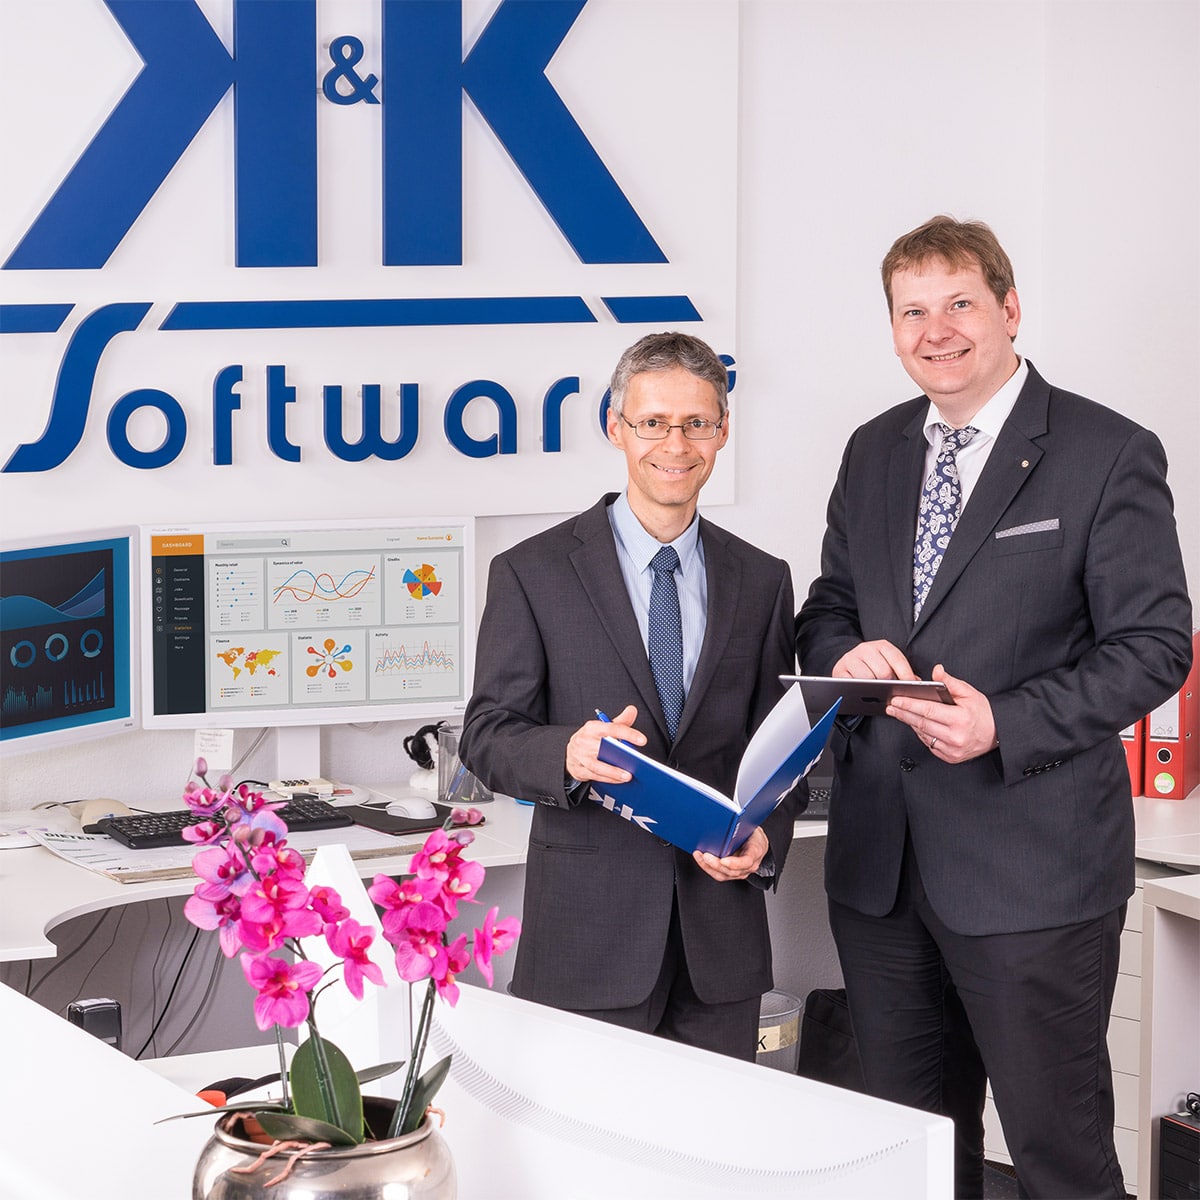 Das Foto zeigt die Vorstände und Gründer der K&K Software AG Arnulf Koch und Armin Krauß